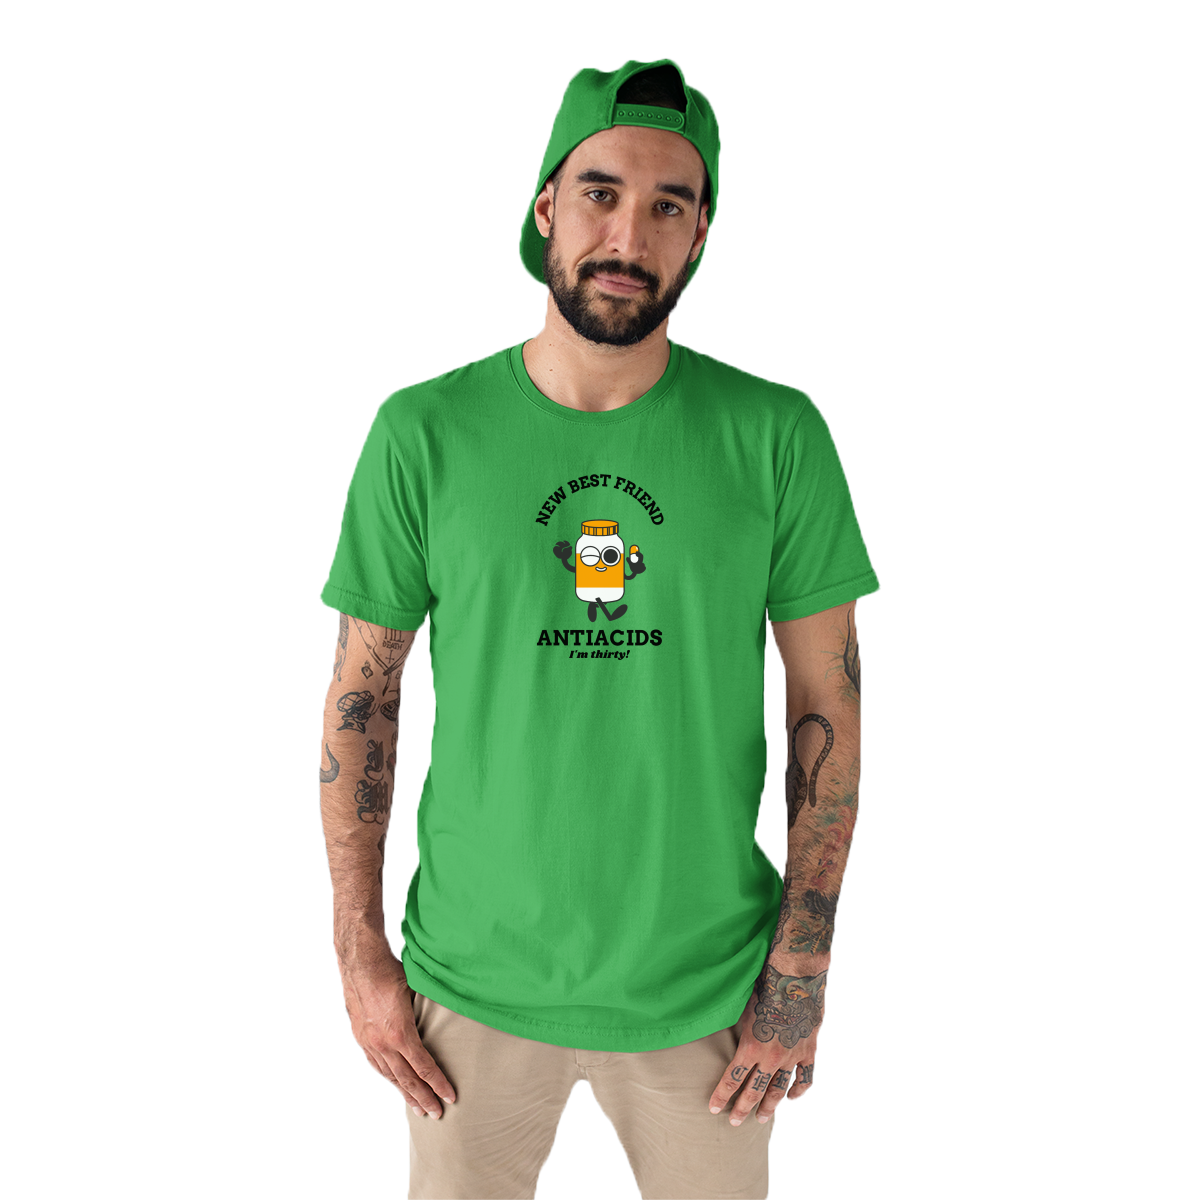 New Best Friend Men's T-shirt | Green